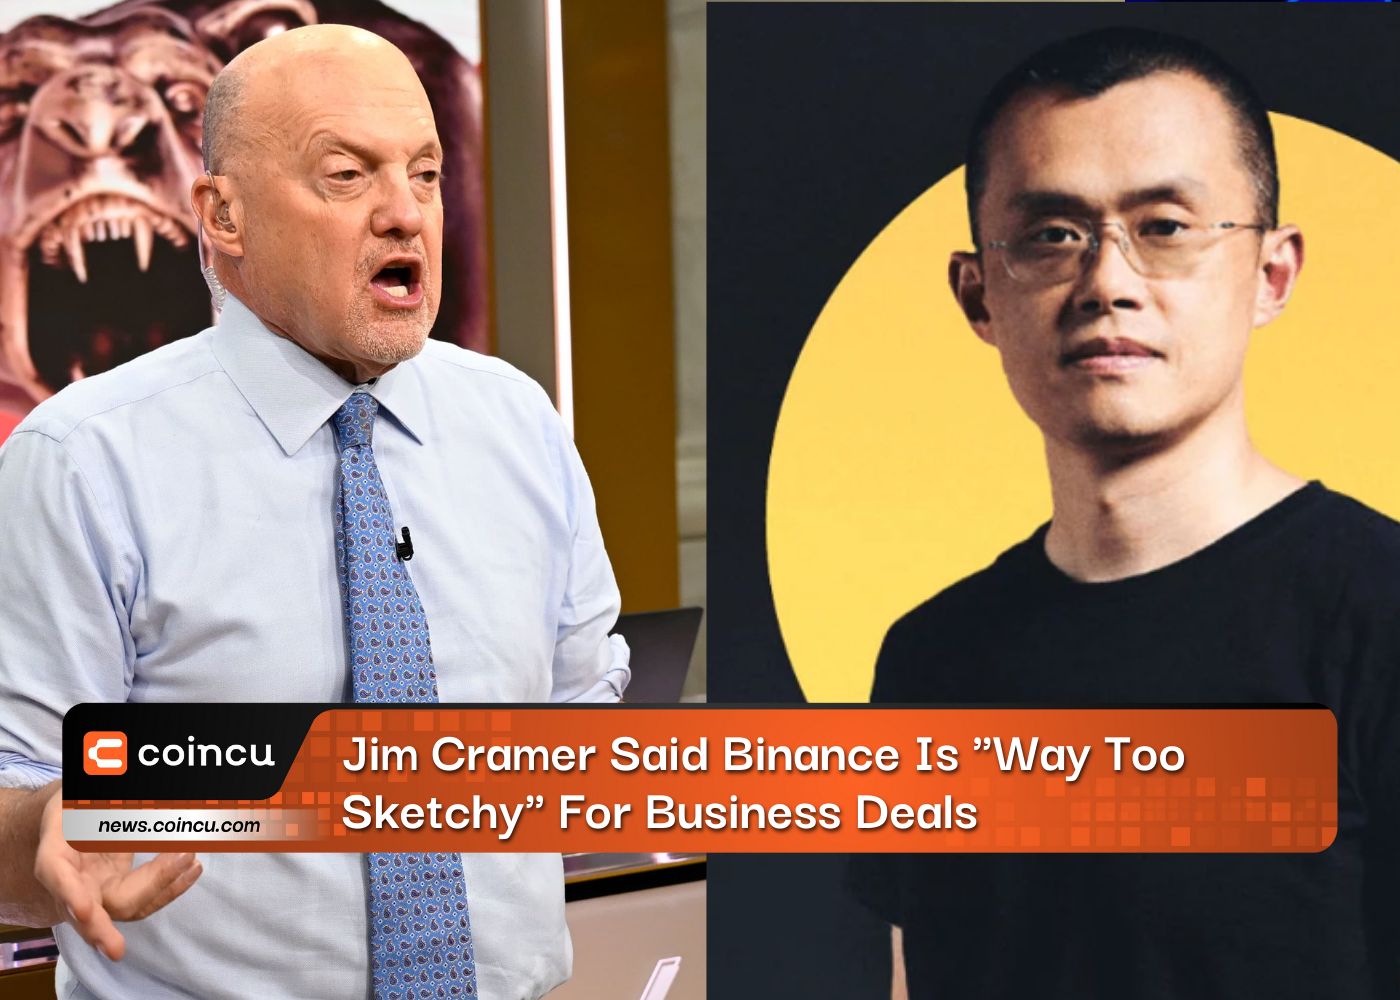 吉姆·克莱默 (Jim Cramer) 表示币安对于商业交易“太粗略”